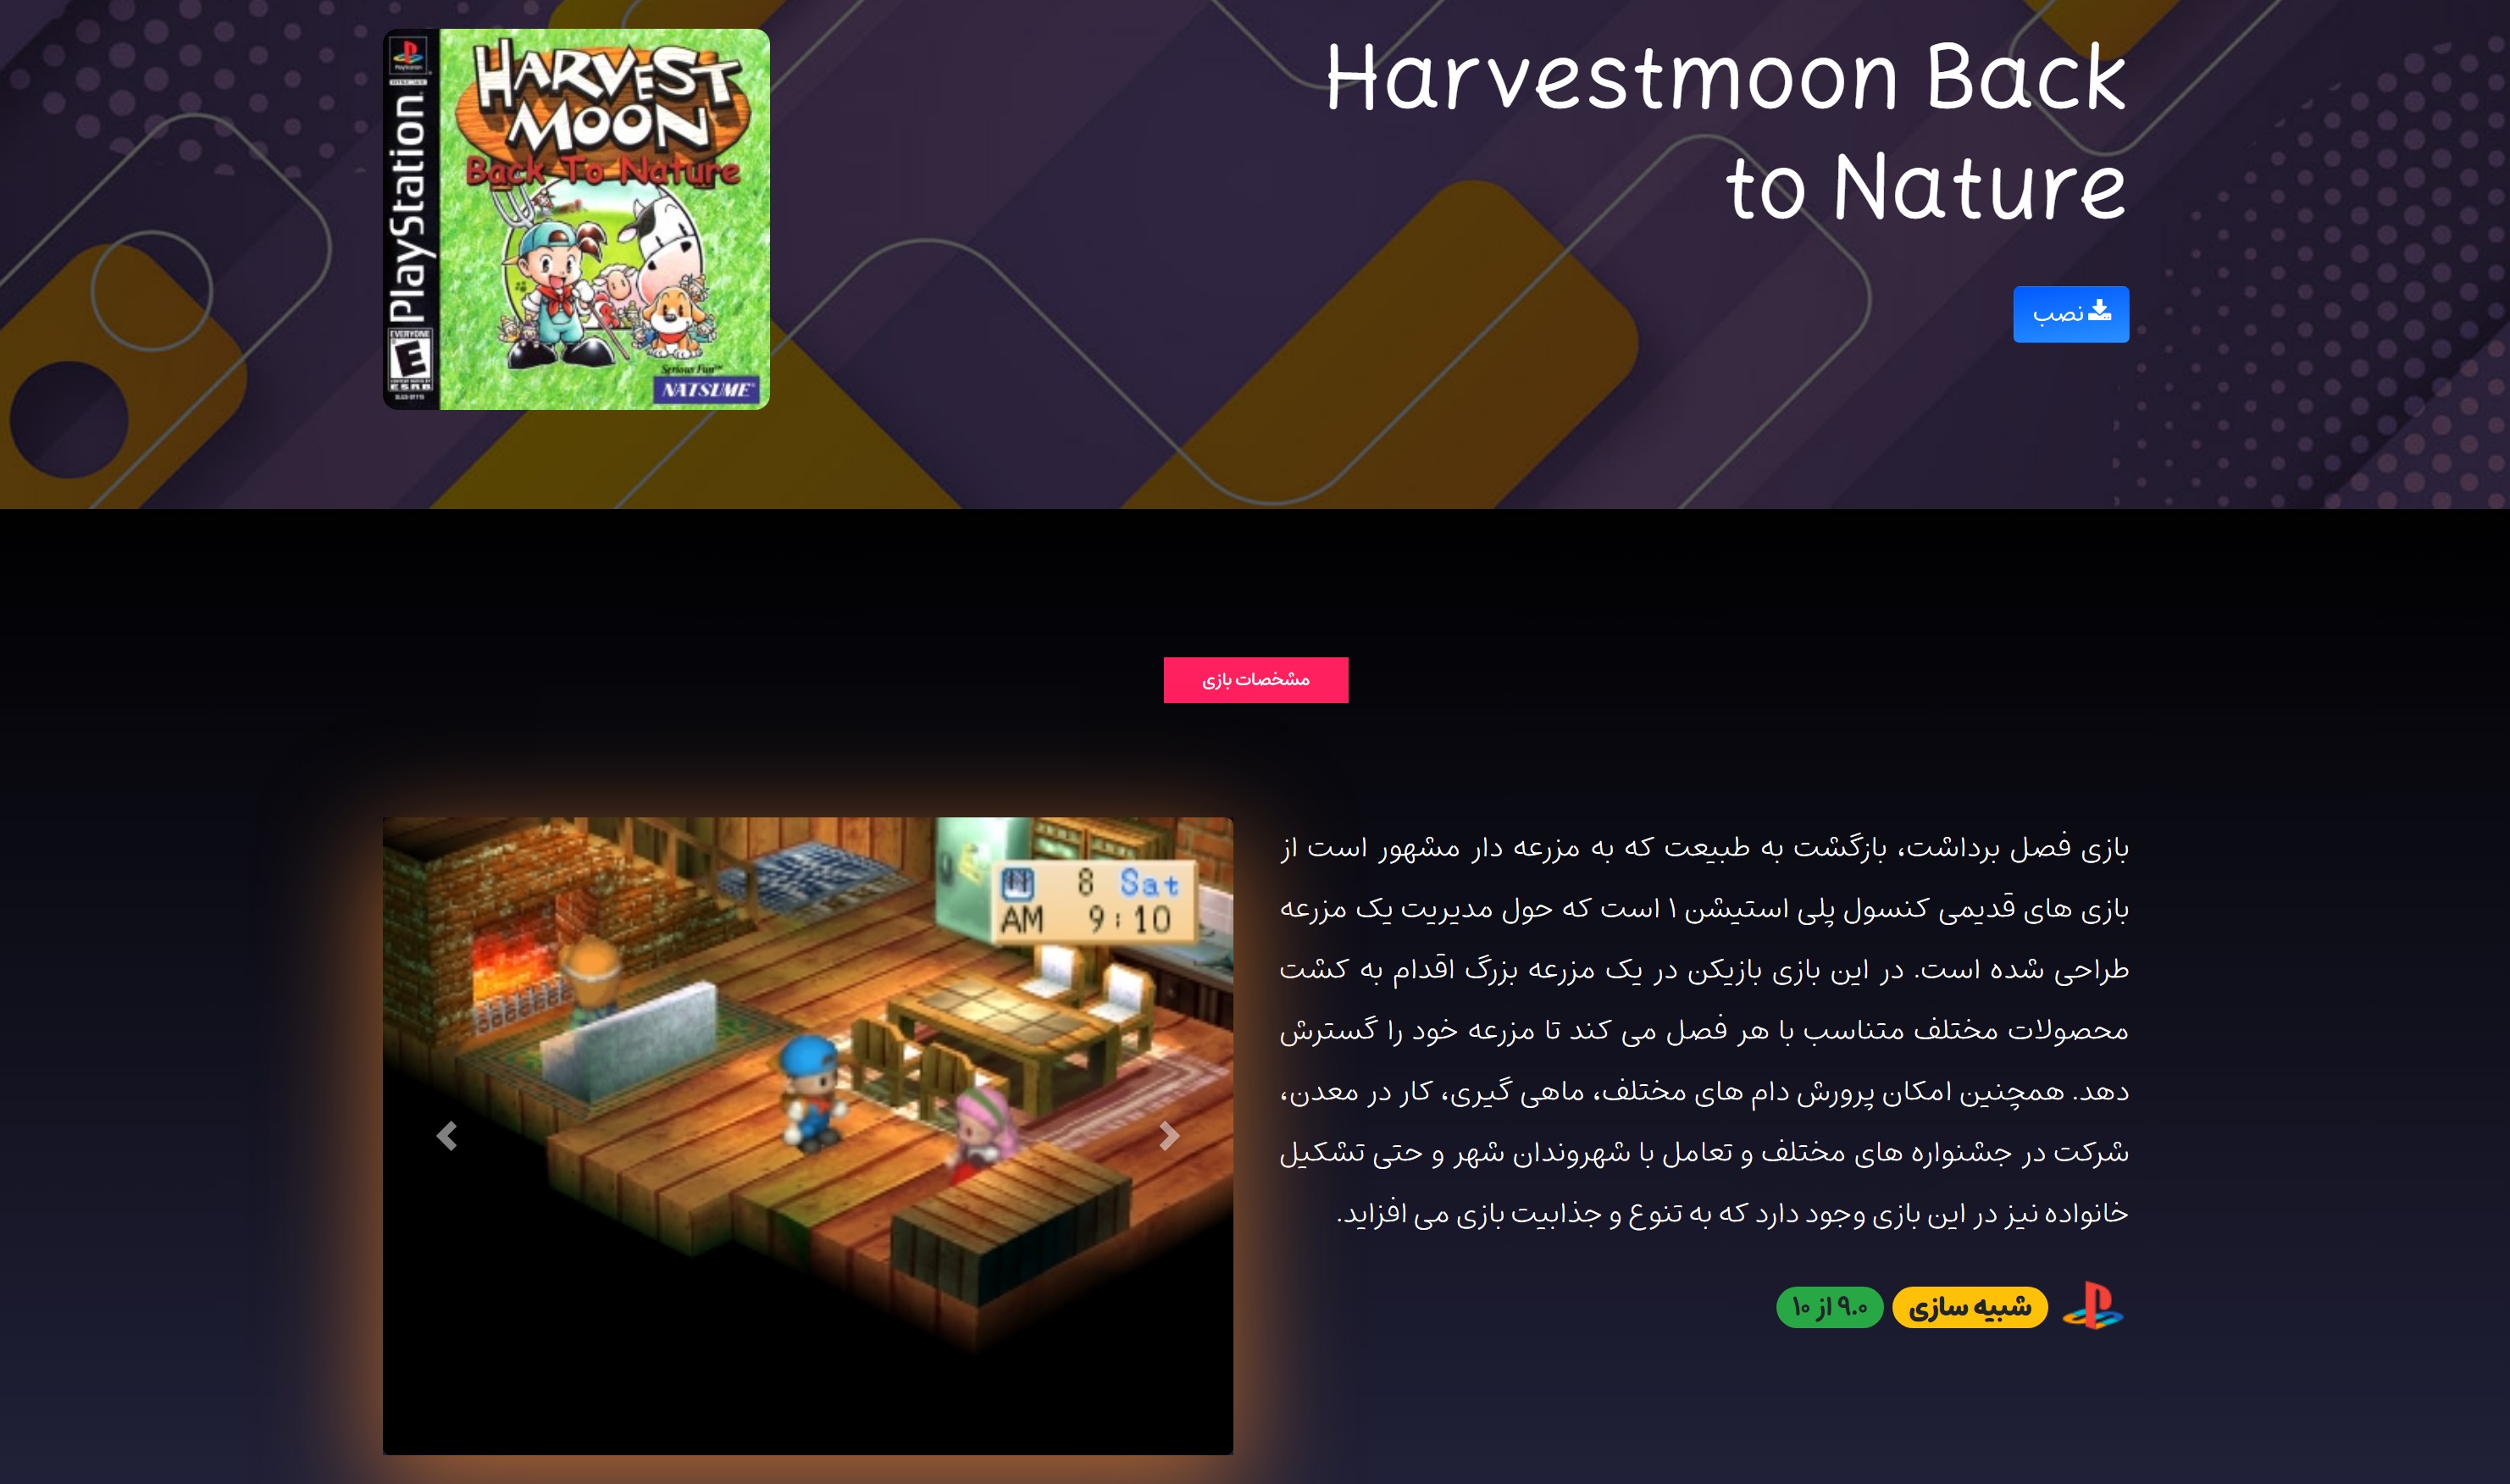 Shahinsoft.ir Bazilo website Game page